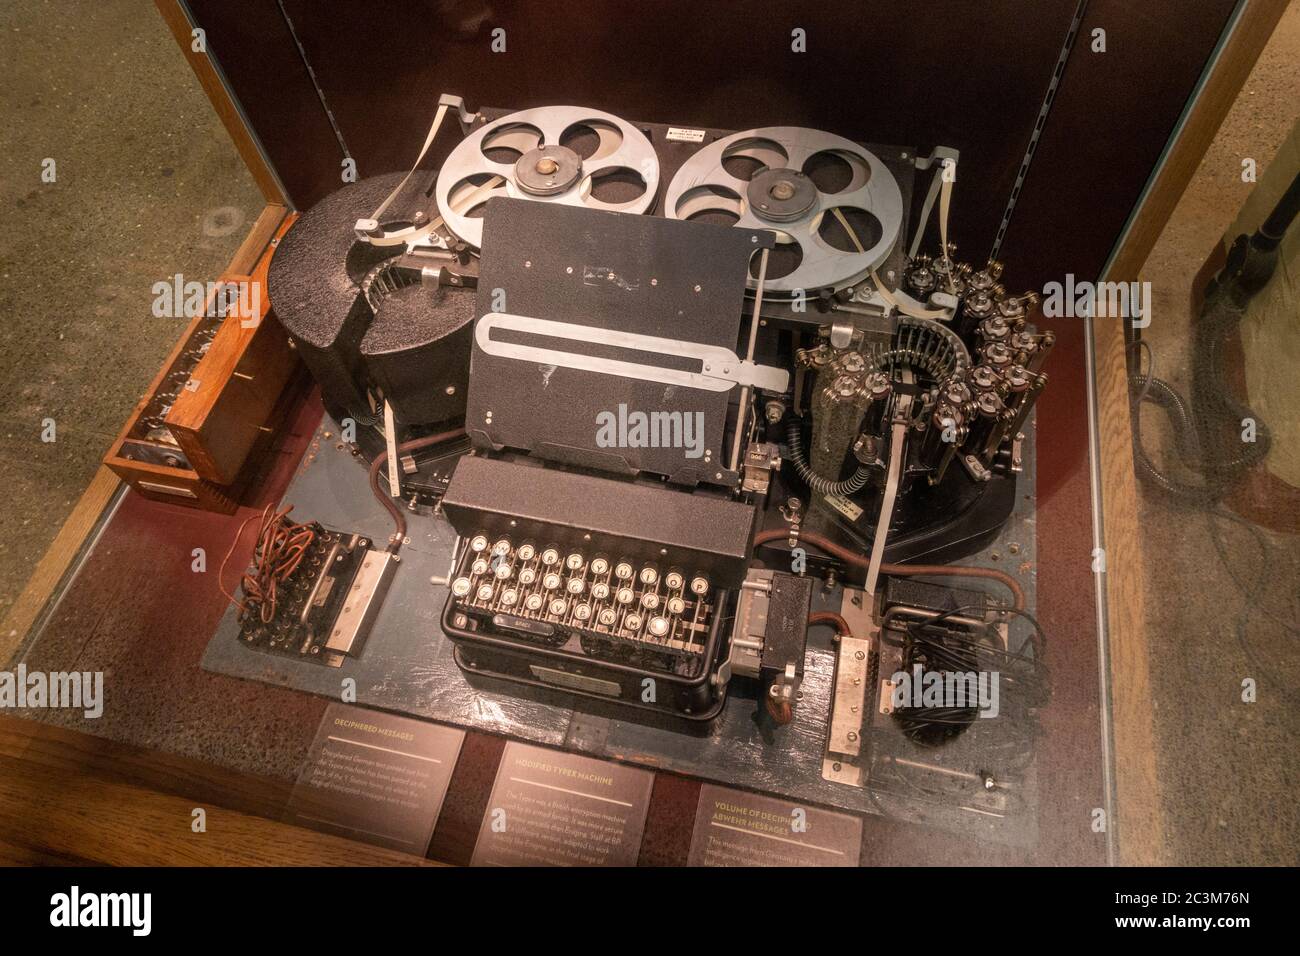 Machine de type modifié, une machine de chiffrement britannique exposée à Bletchley Park, Bletchley. Buckinghamshire, Royaume-Uni. Banque D'Images